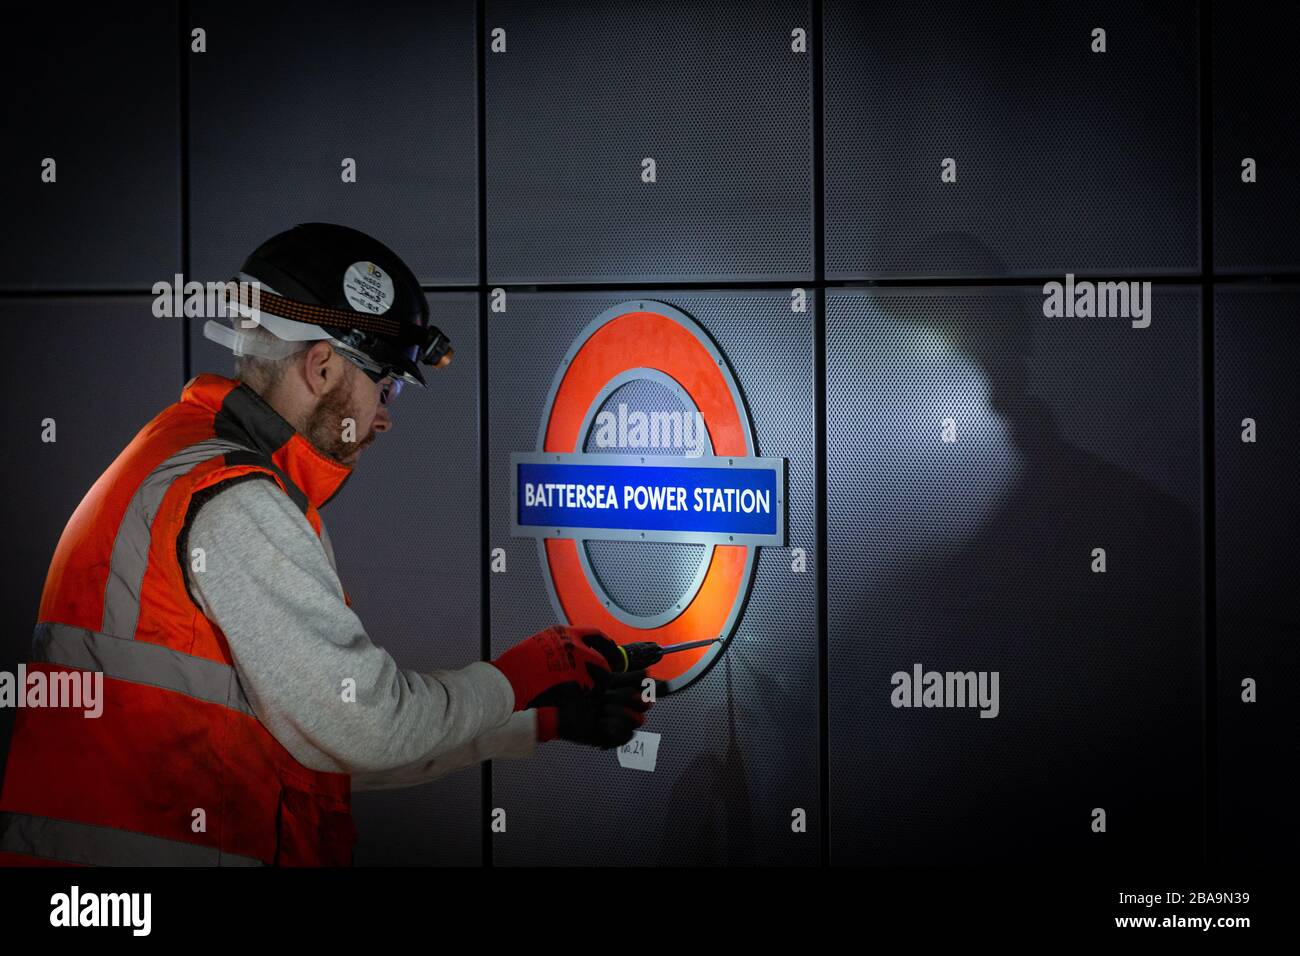 Un ingénieur installe un rond-point sur la plate-forme de la station d'alimentation Battersea, station de métro de Londres Banque D'Images